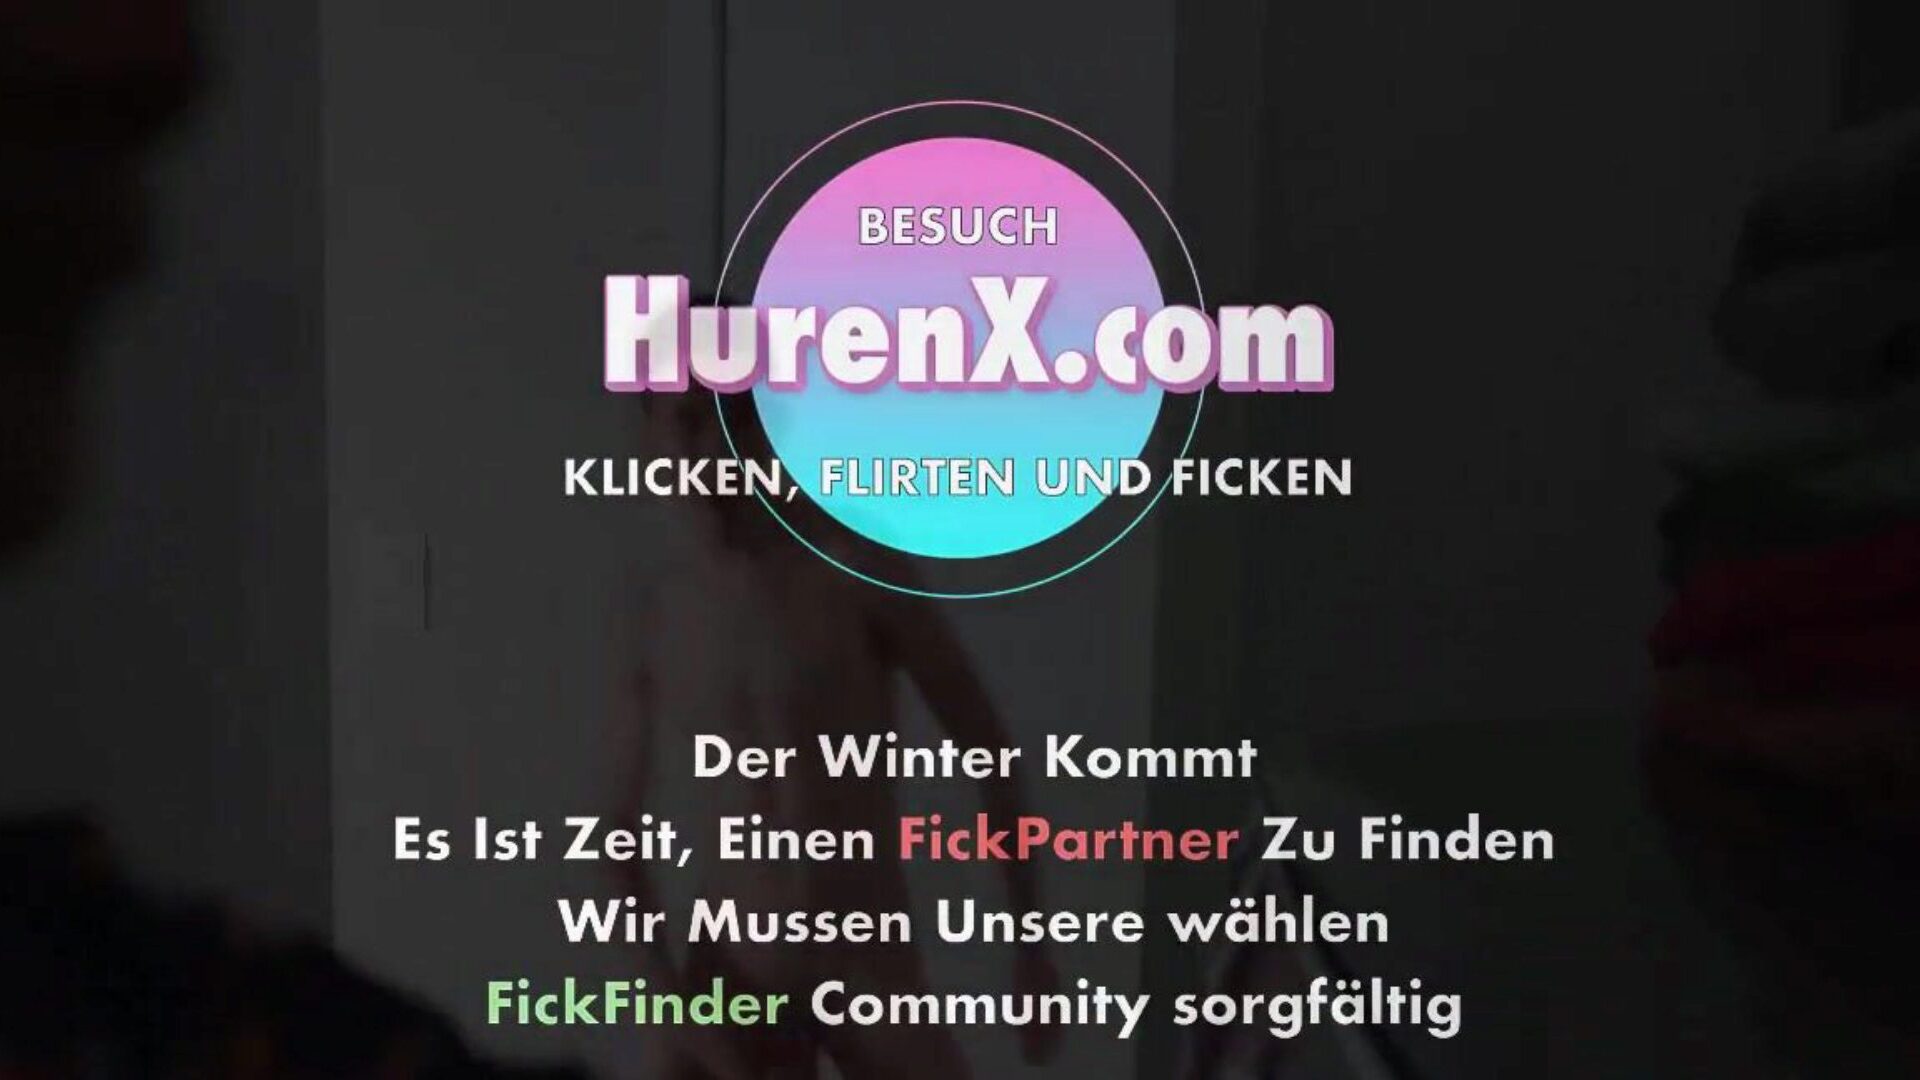 стиефсохн фицкт стиефмуттер, фрее муттер немачки хд порно ц3 гледајте стиефсохн фицкт стиефмуттер епизоду на кхамстер, најдебљу веб страницу са хд грбом са тонама бесплатних за све немачке муттер немачке и ујизз порно филмове